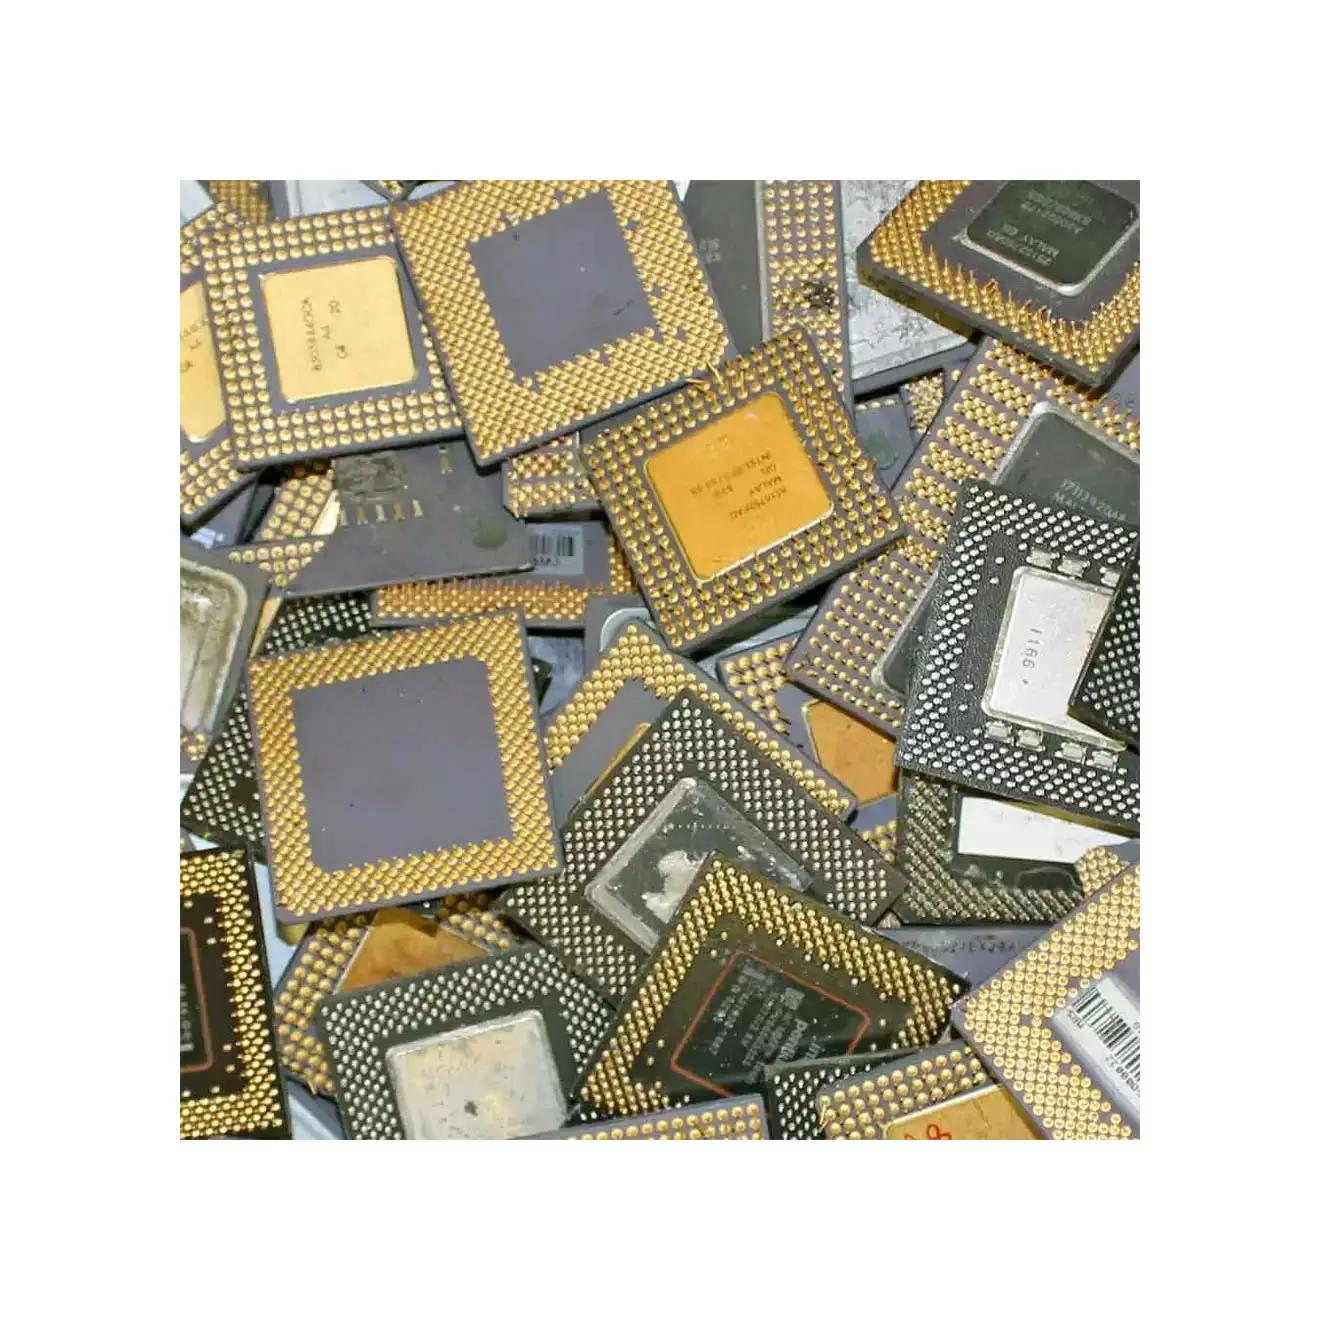 Rottami di CPU in ceramica con perni dorati/rottami di processori/ceramica Intel Pentium Pro a prezzo all'ingrosso